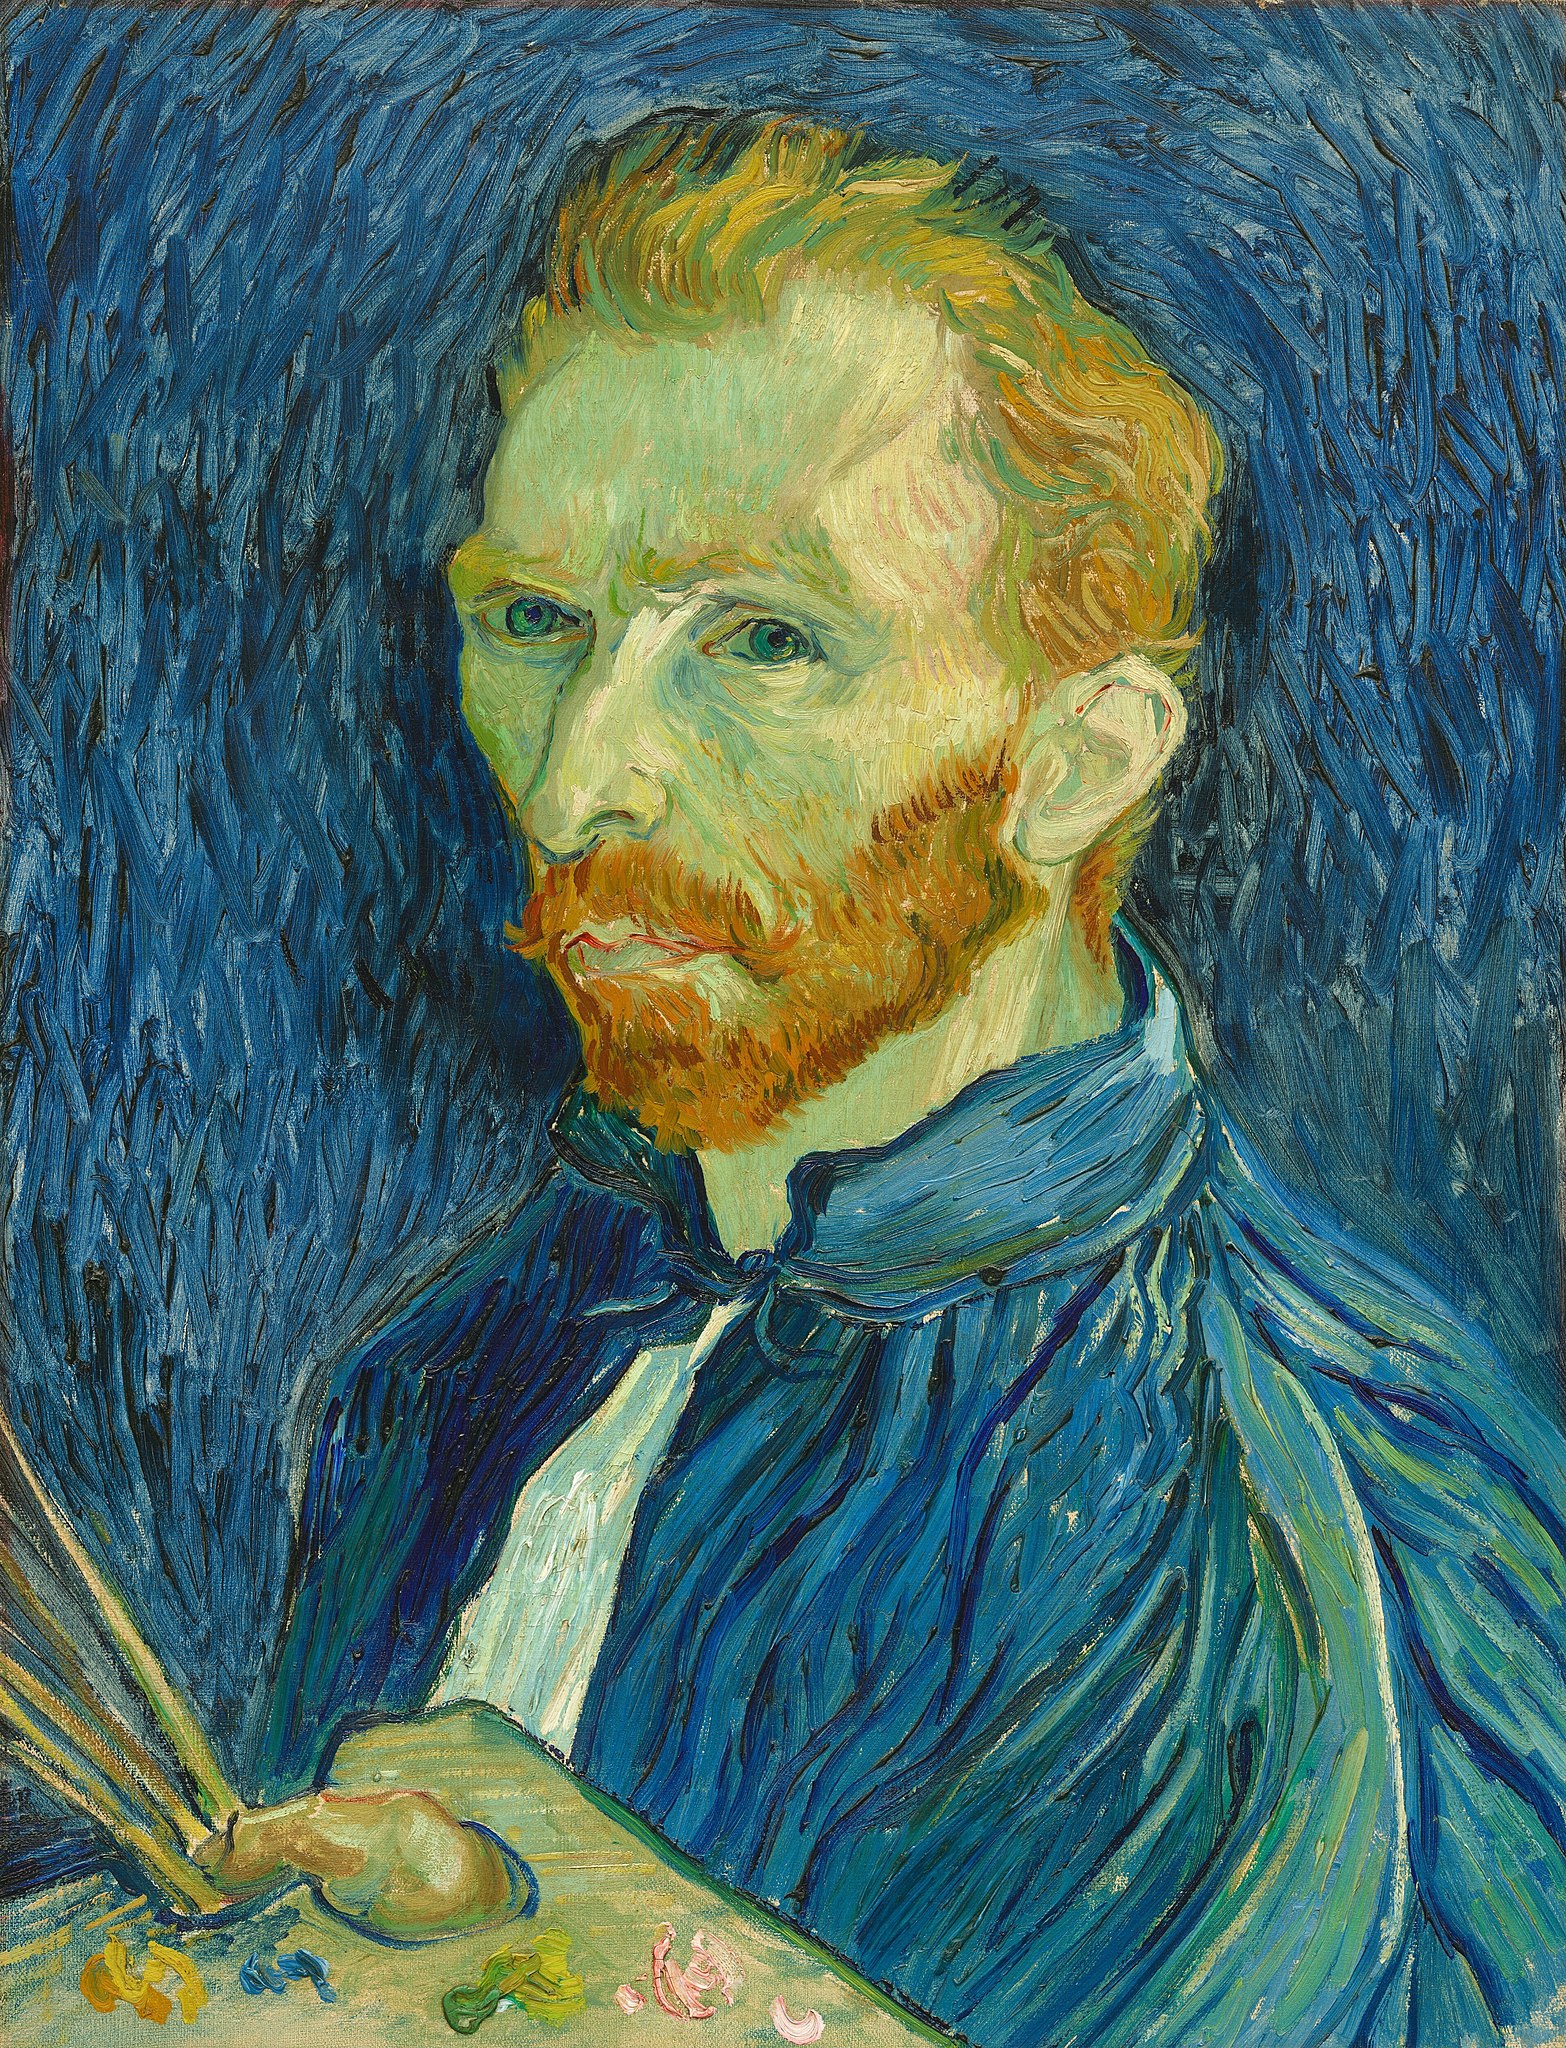 Autoportrét by Vincent van Gogh - 1889 - 43,8 x 57,1 cm 